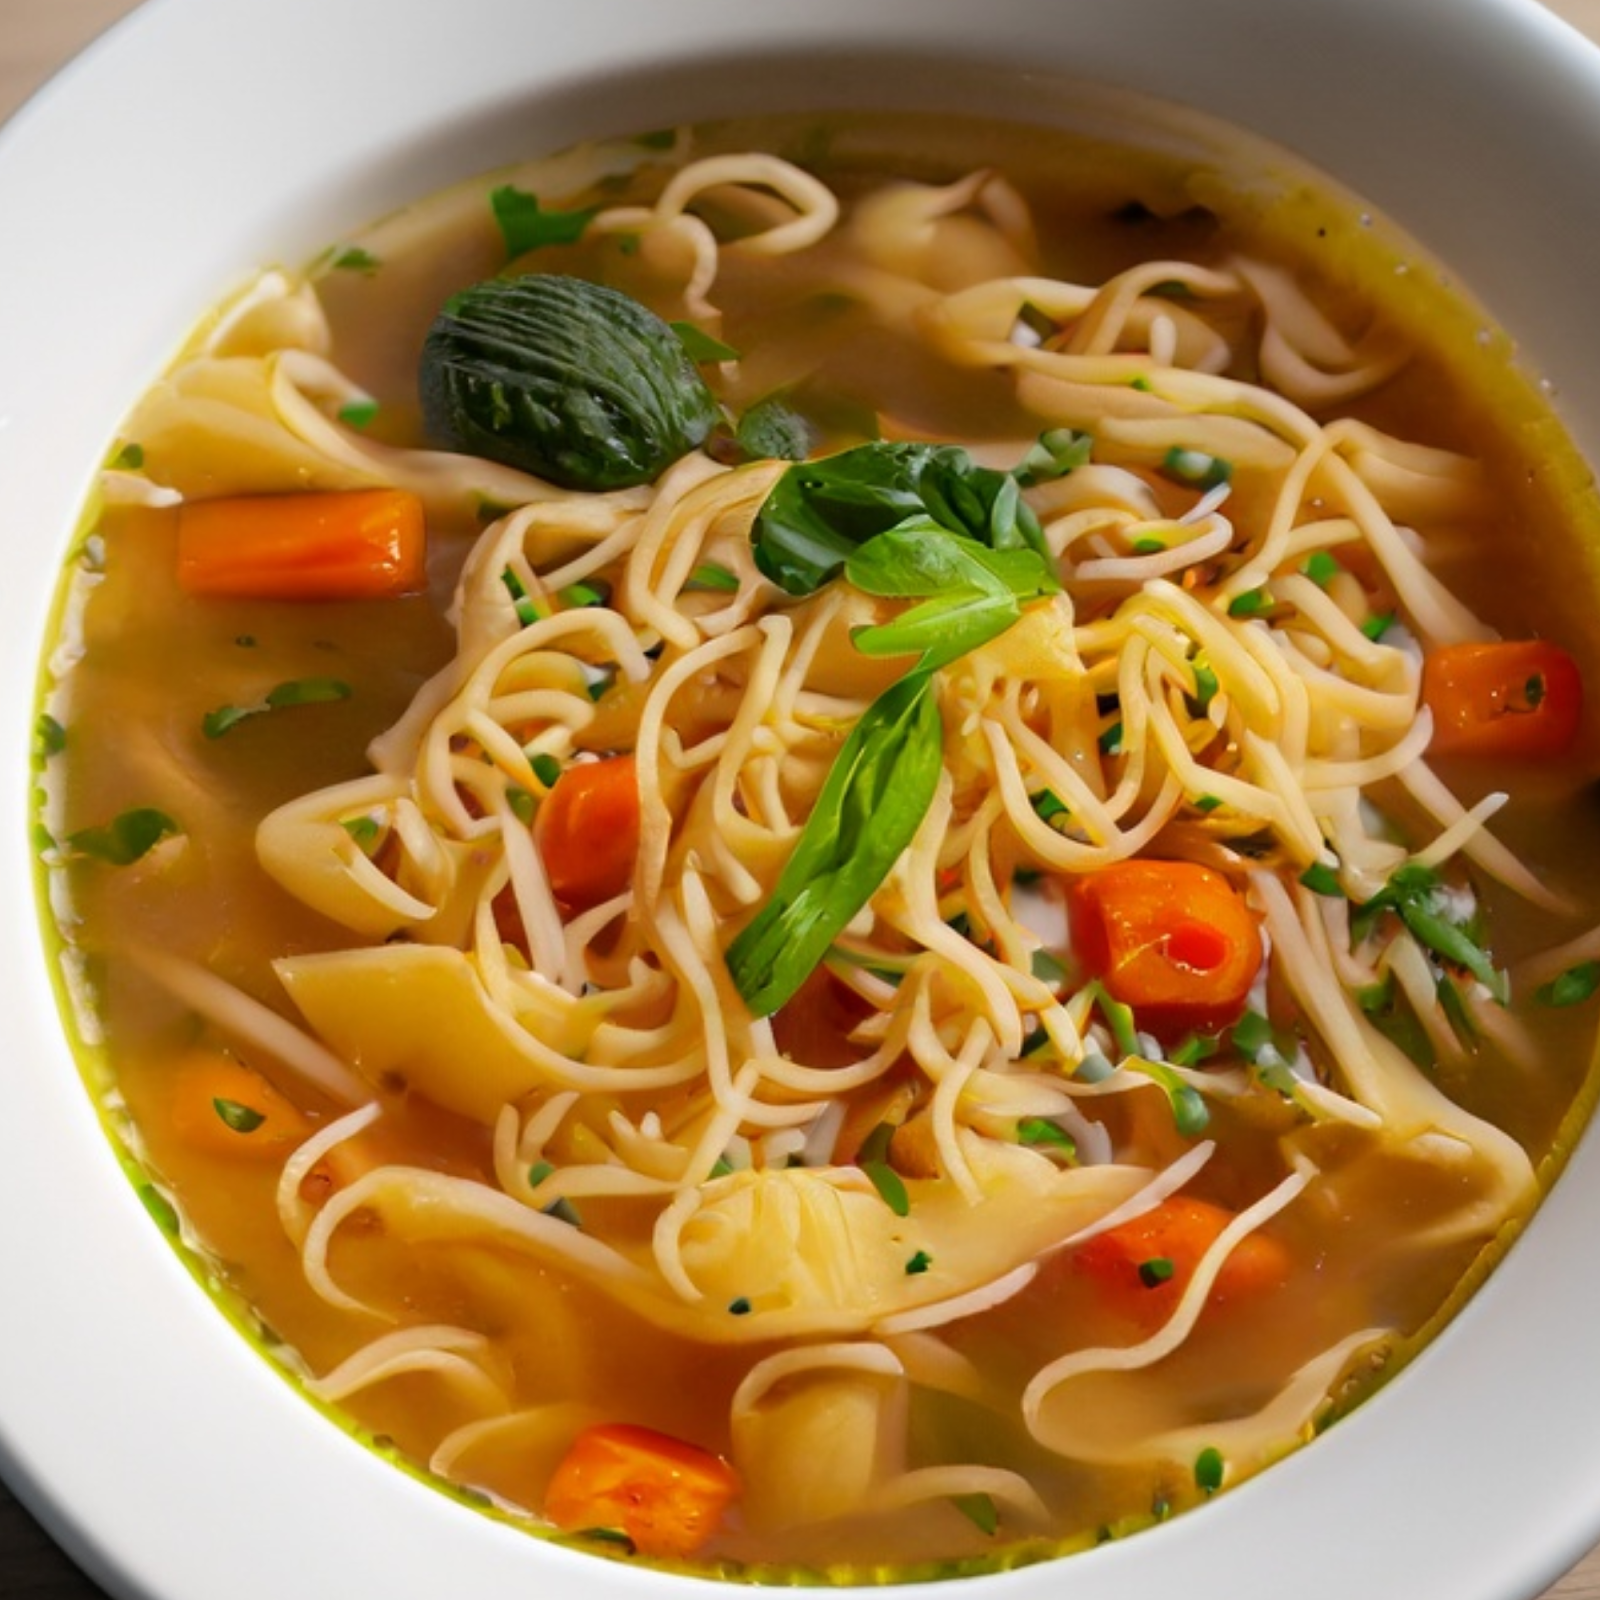  Noodle Soup Lower